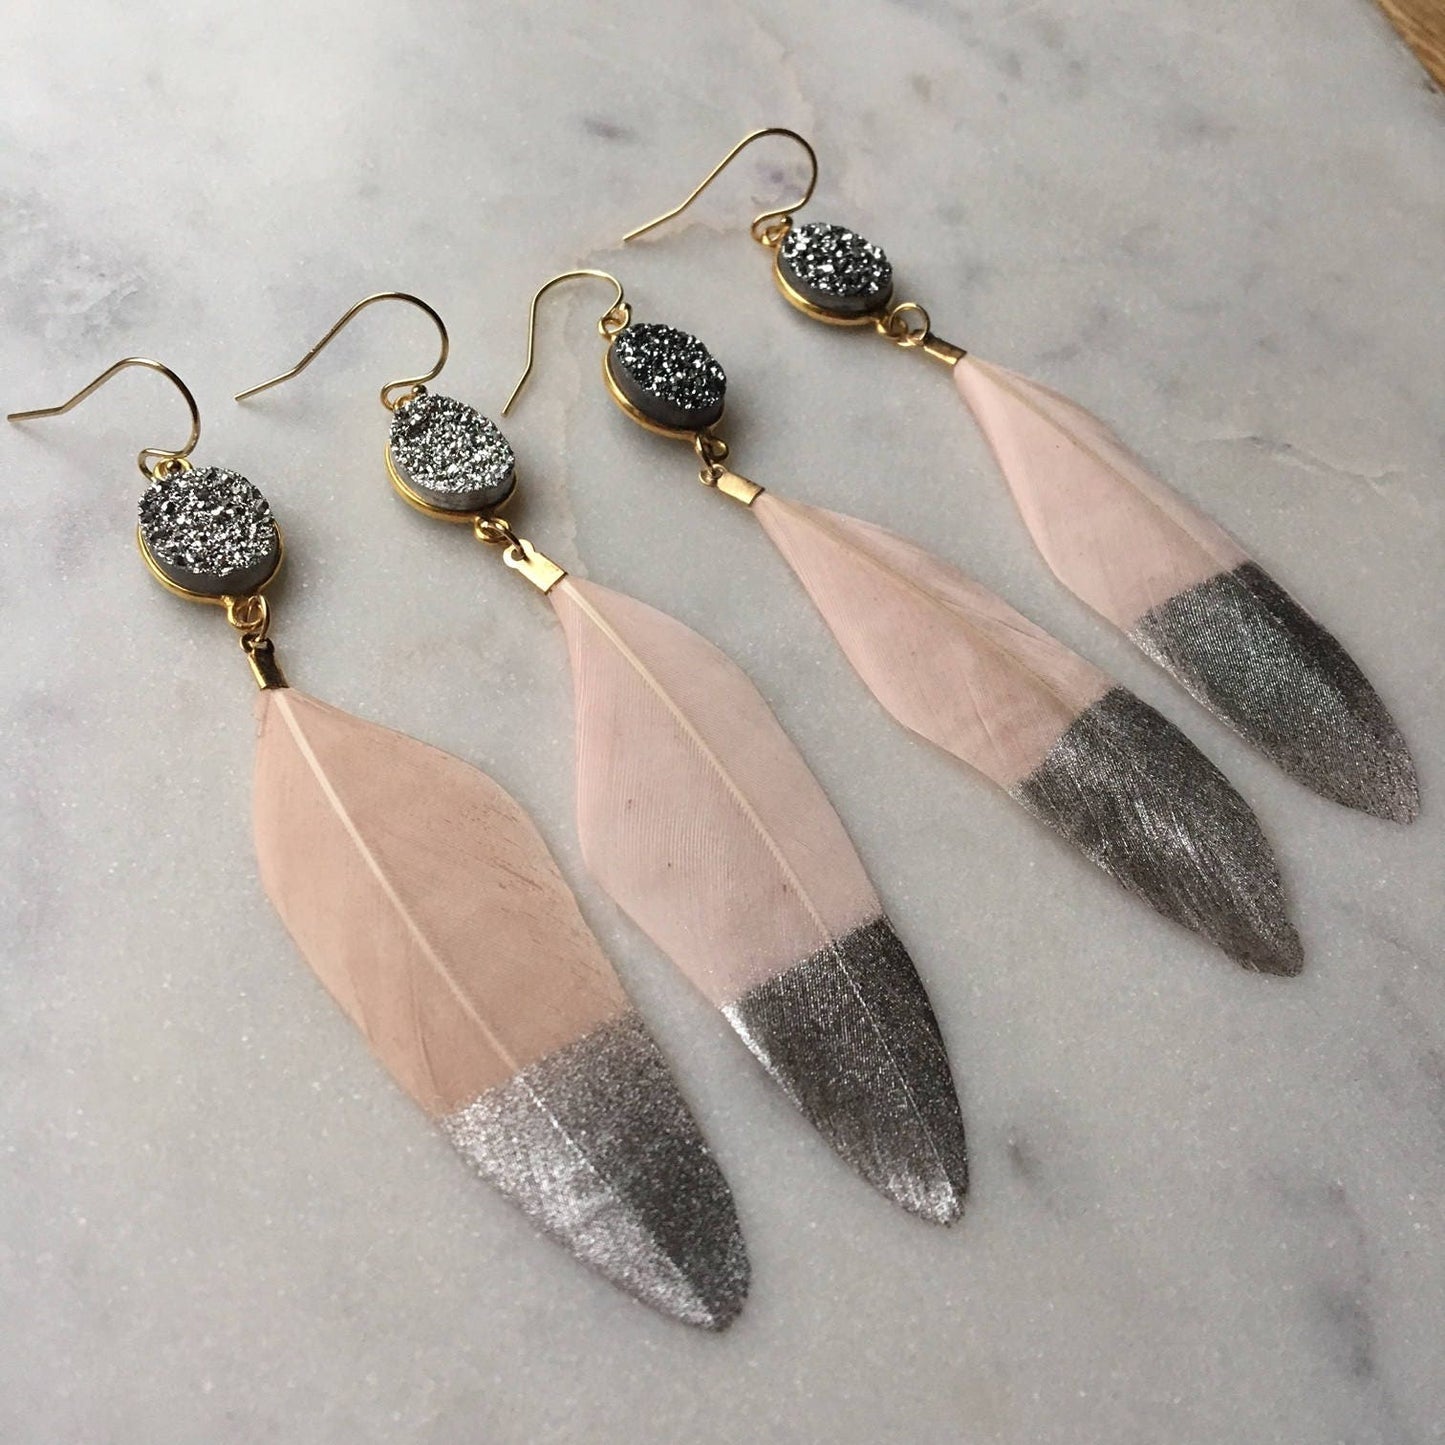 Silver Dipped Feather Earrings, Silver Druzy Earrings, Gold Druzy Earrings, Pink Feather Earrings, Statement Earrings, Fairytale Gift